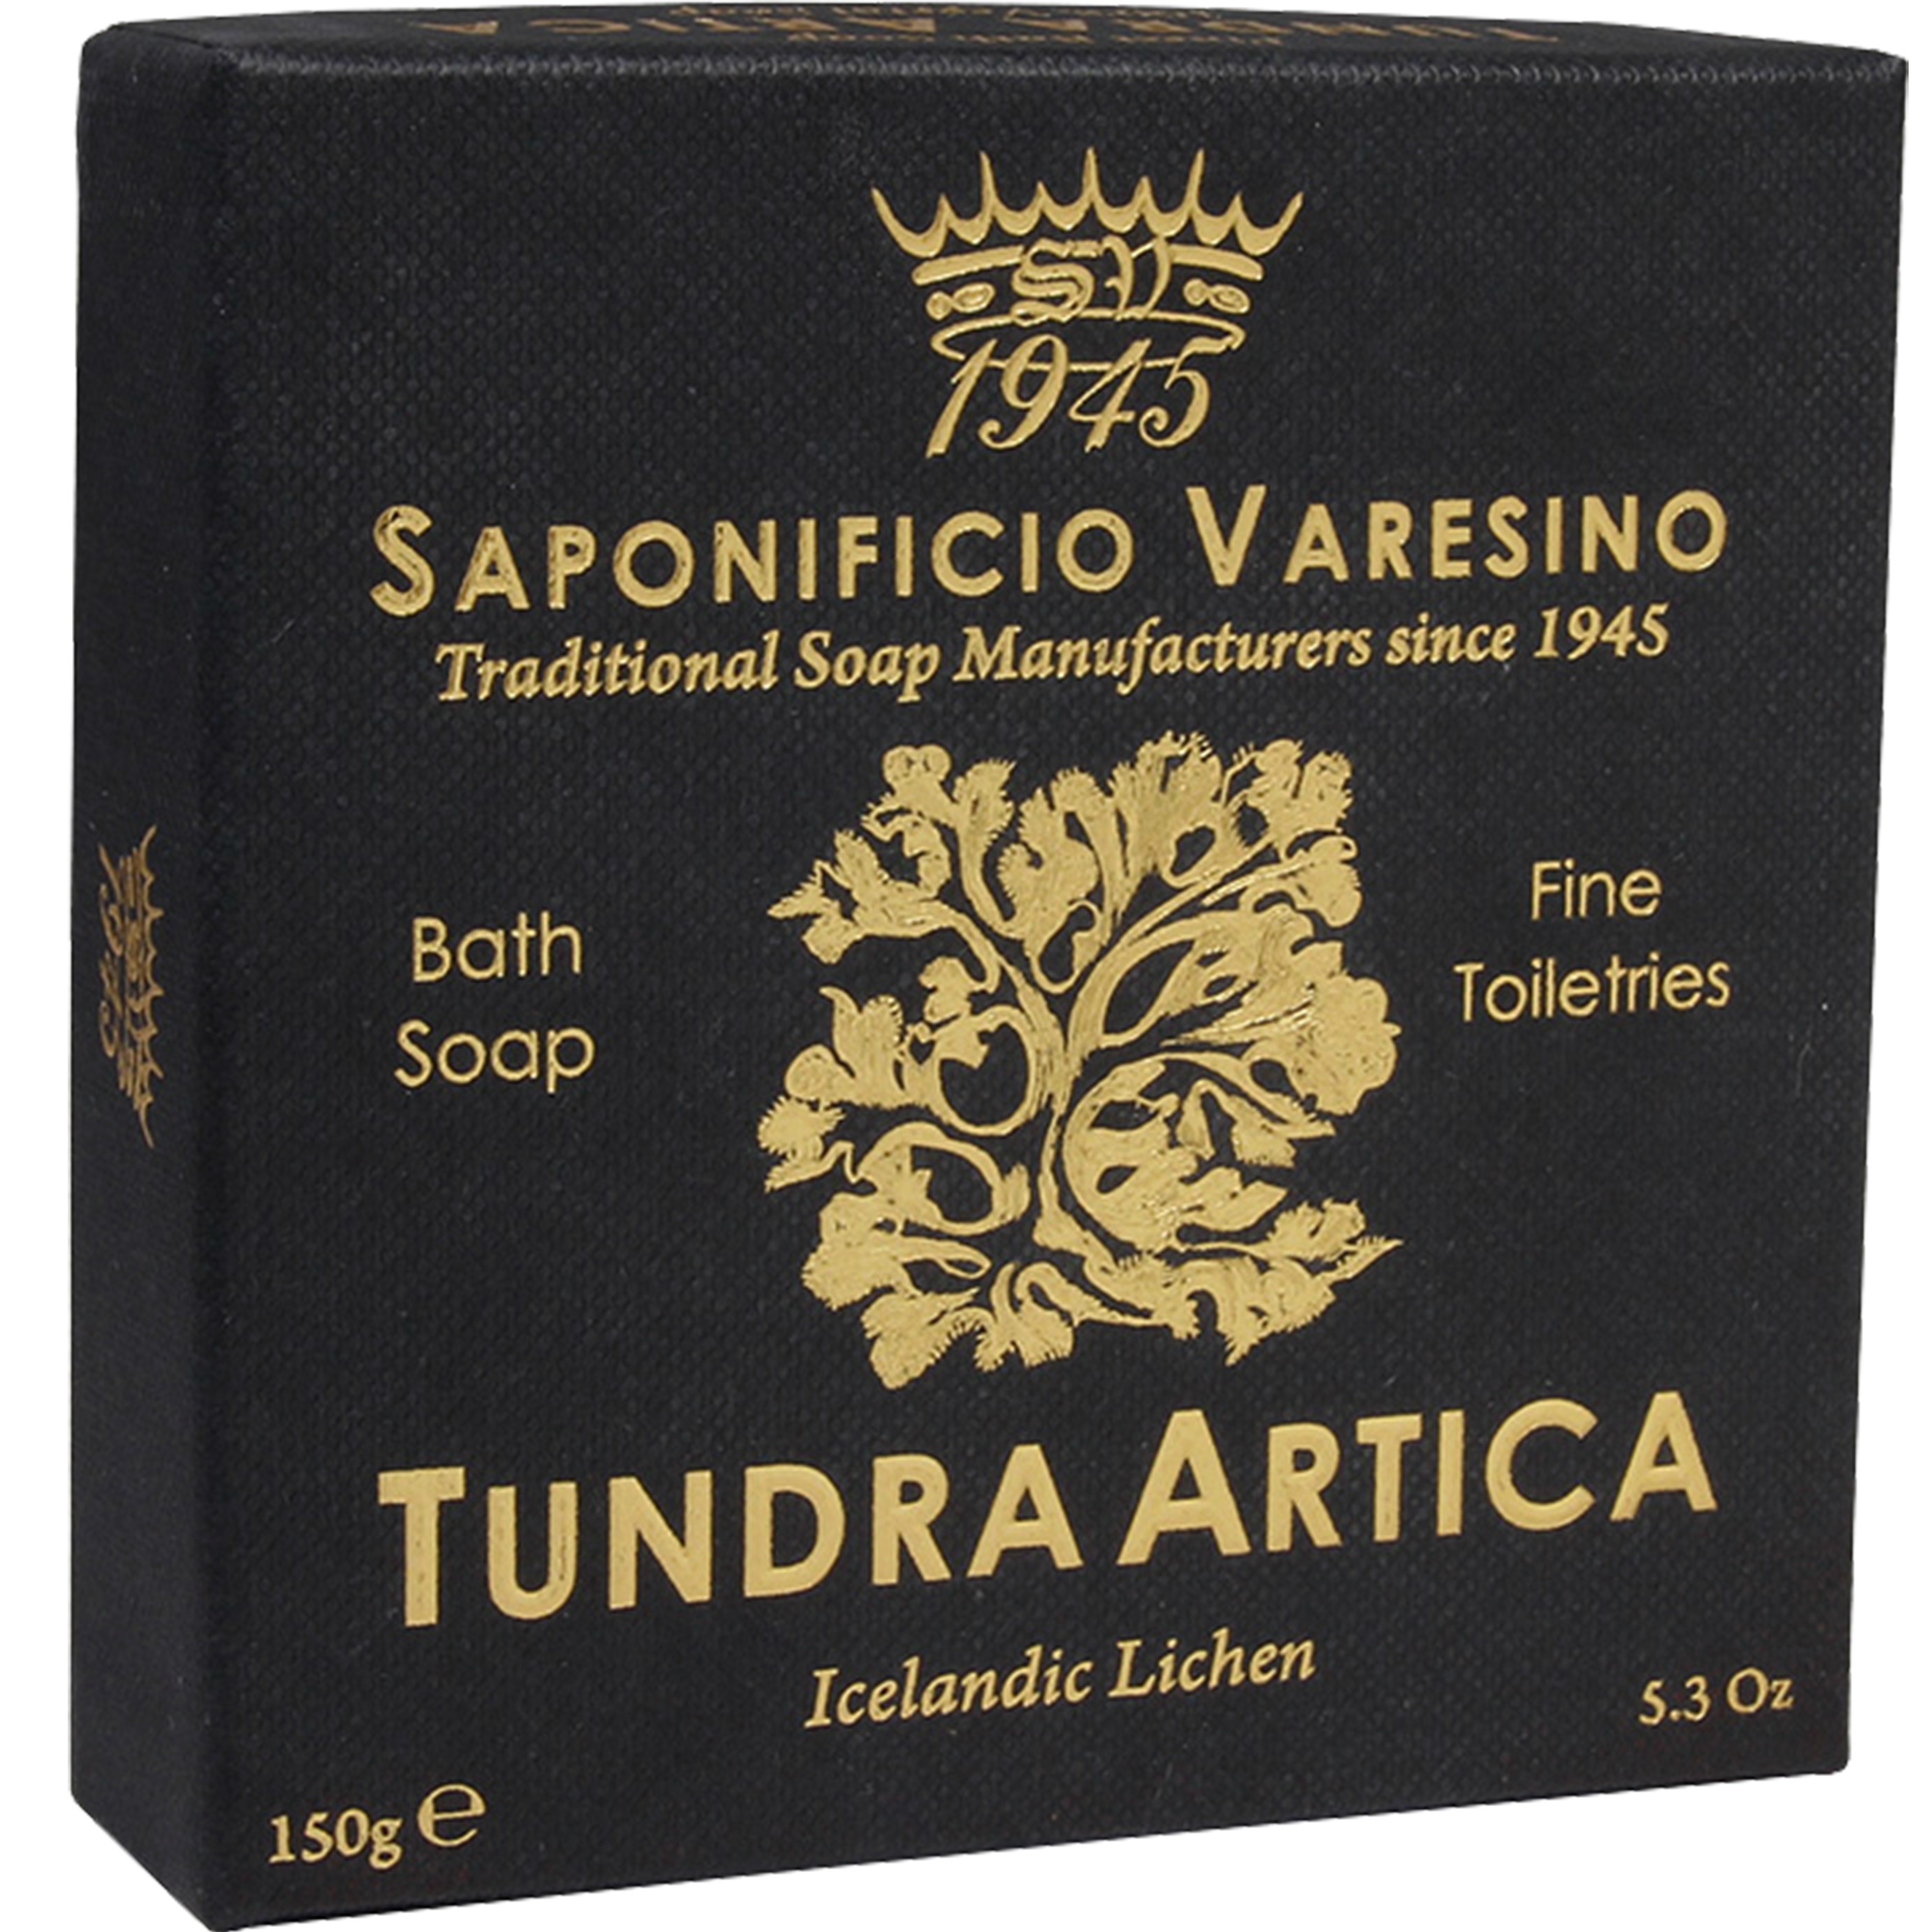  Saponificio Varesino Bath Soap Tundra Artica - 2.1 - SV-S1198